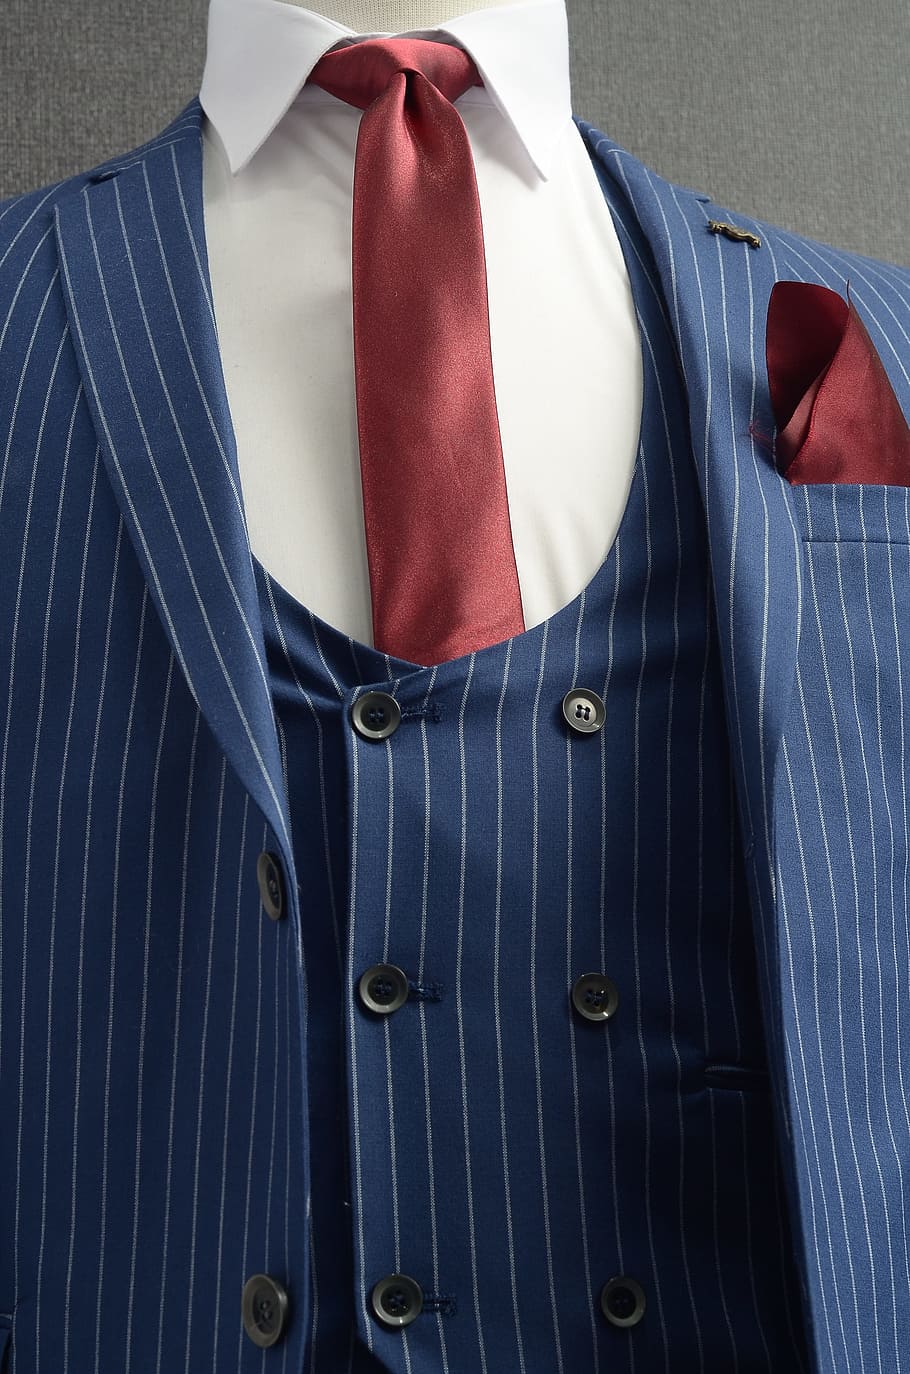 Suit, Tie, Men, suit, tie, clothing, button down shirt, necktie, business, businessman, well-dressed